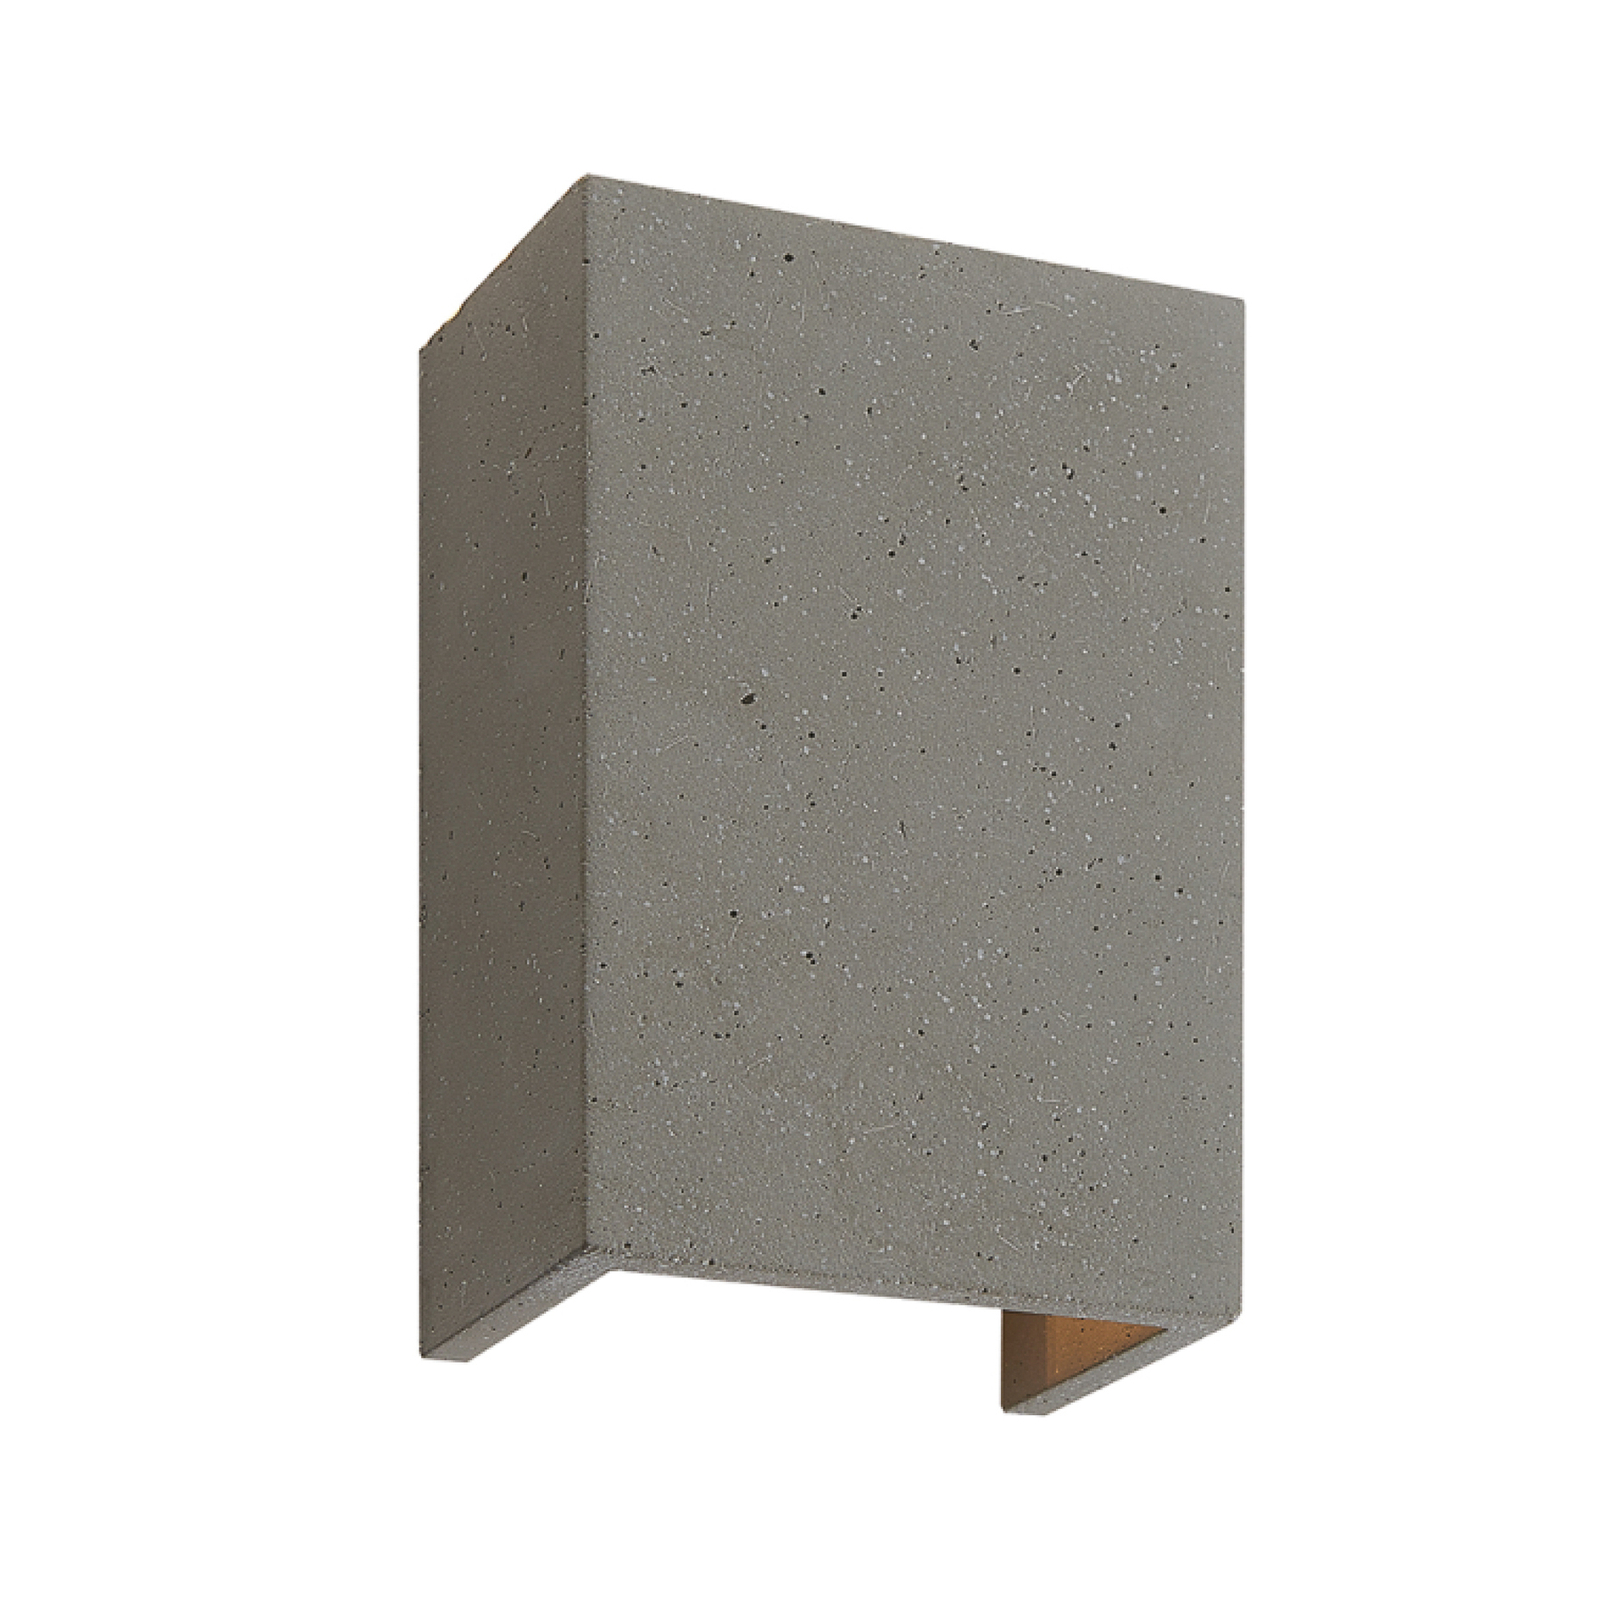 Lindby fali lámpa Albin, szürke, beton, G9, 16 cm magas